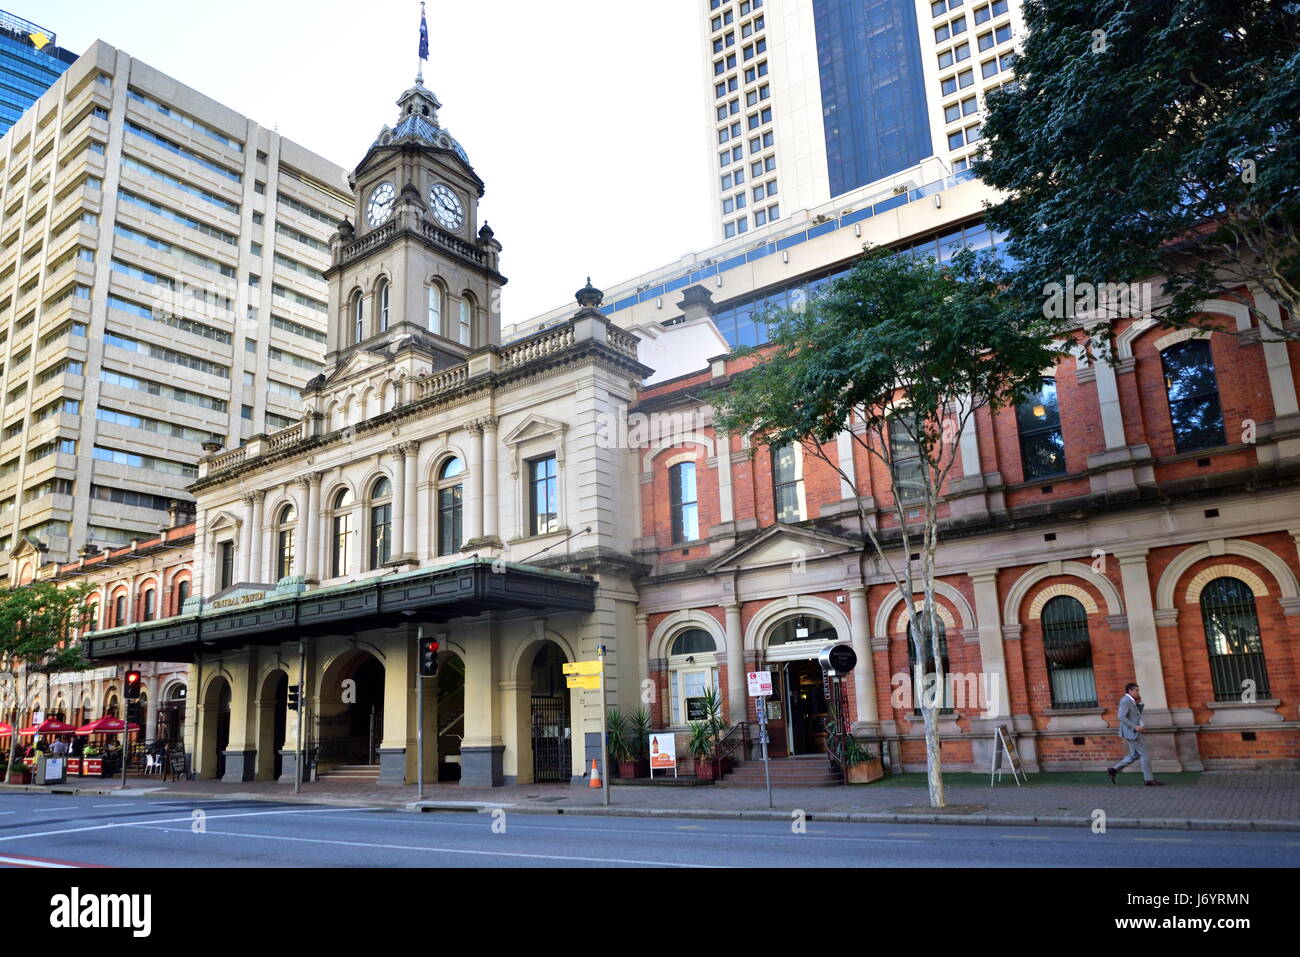 Central railway station, Brisbane, Queensland, Australia Stock Photo